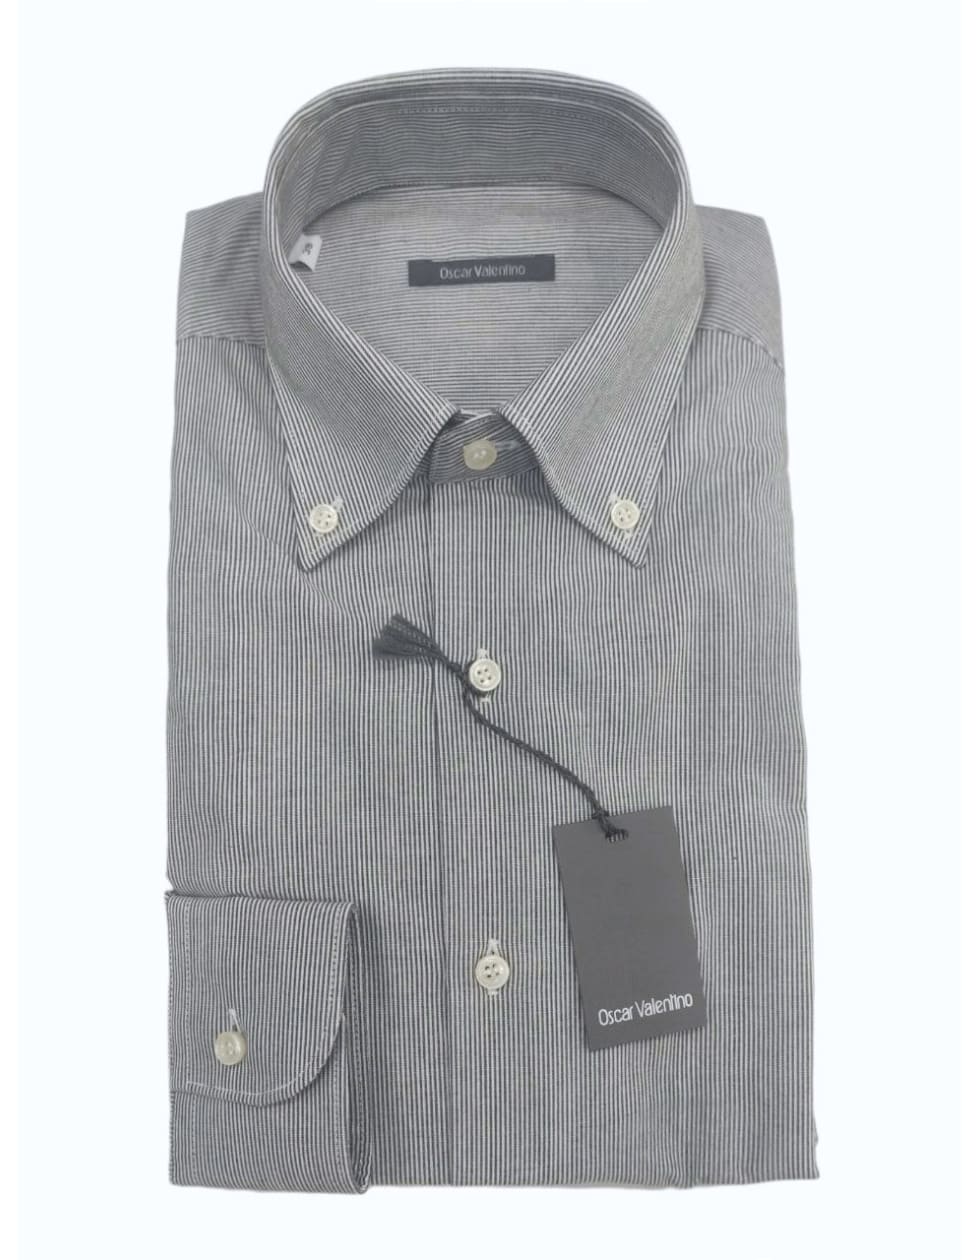 Camicia manica lunga cotone NO SLIM - rigato grigio/collo botton down - OSCAR VALENTINO